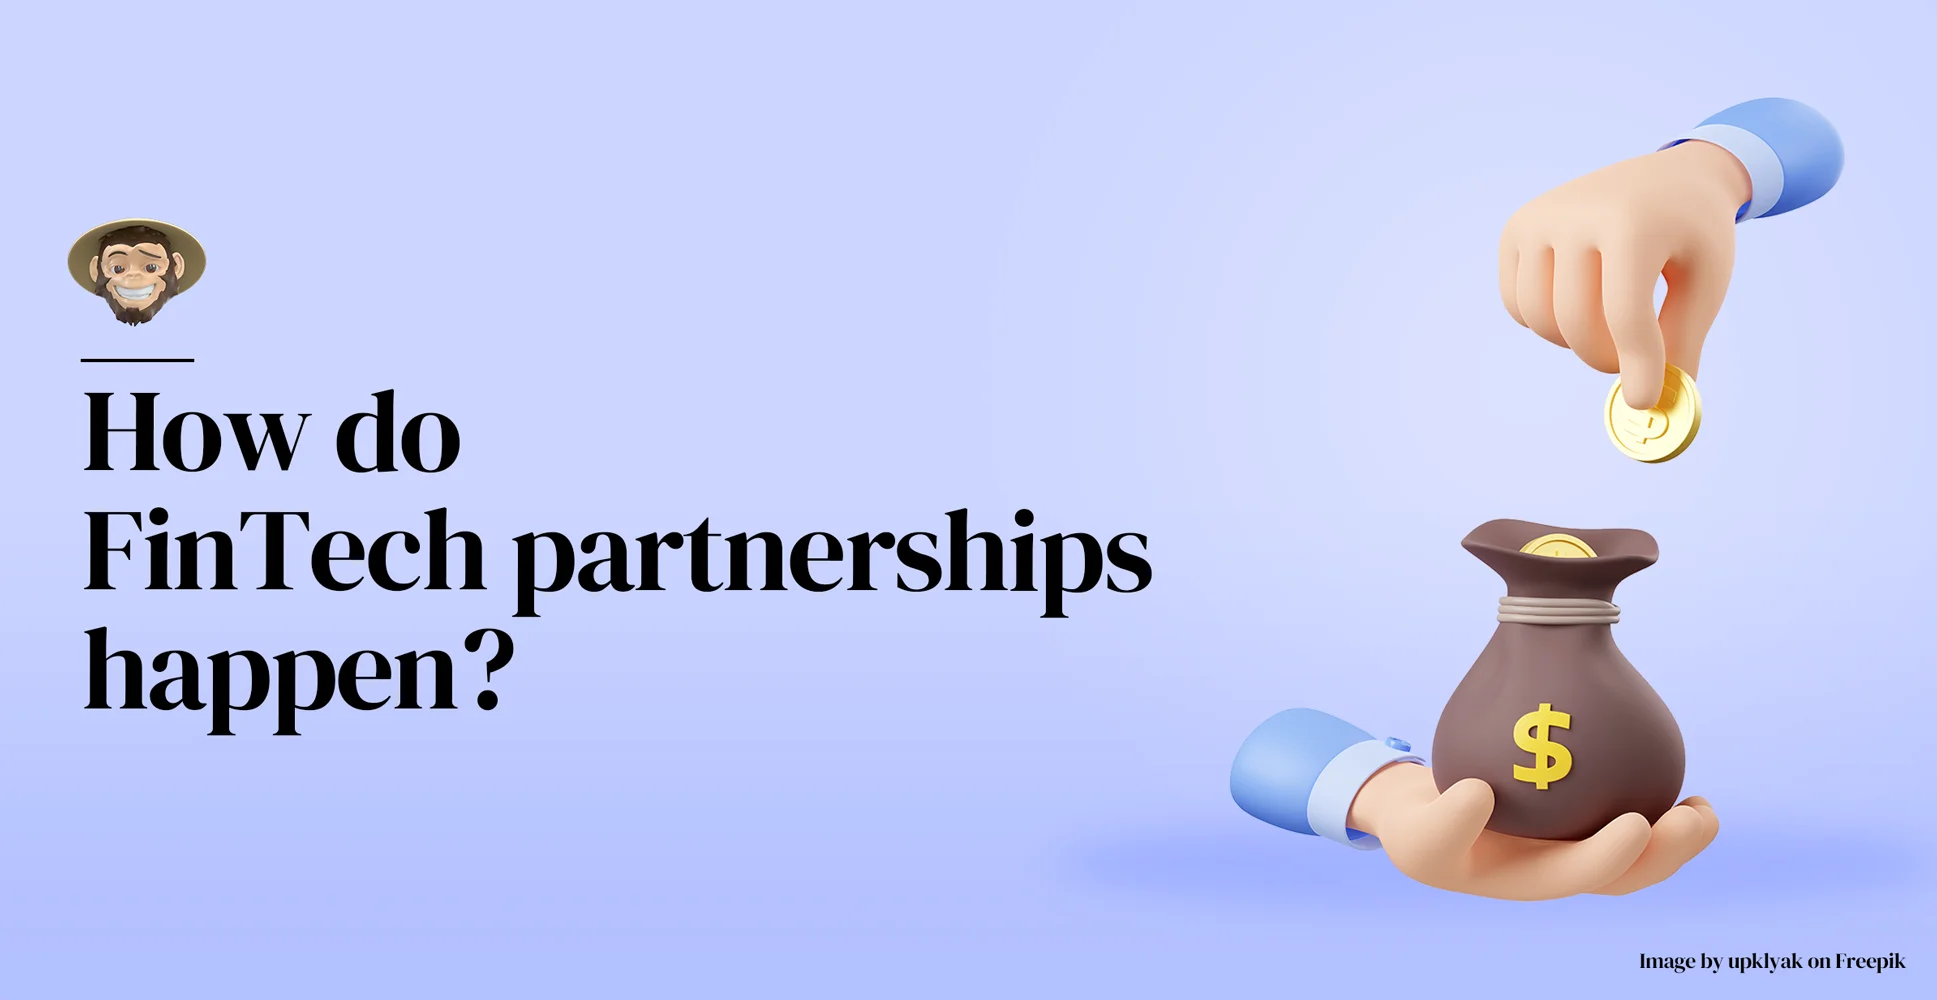 How do FinTech partnerships happen?